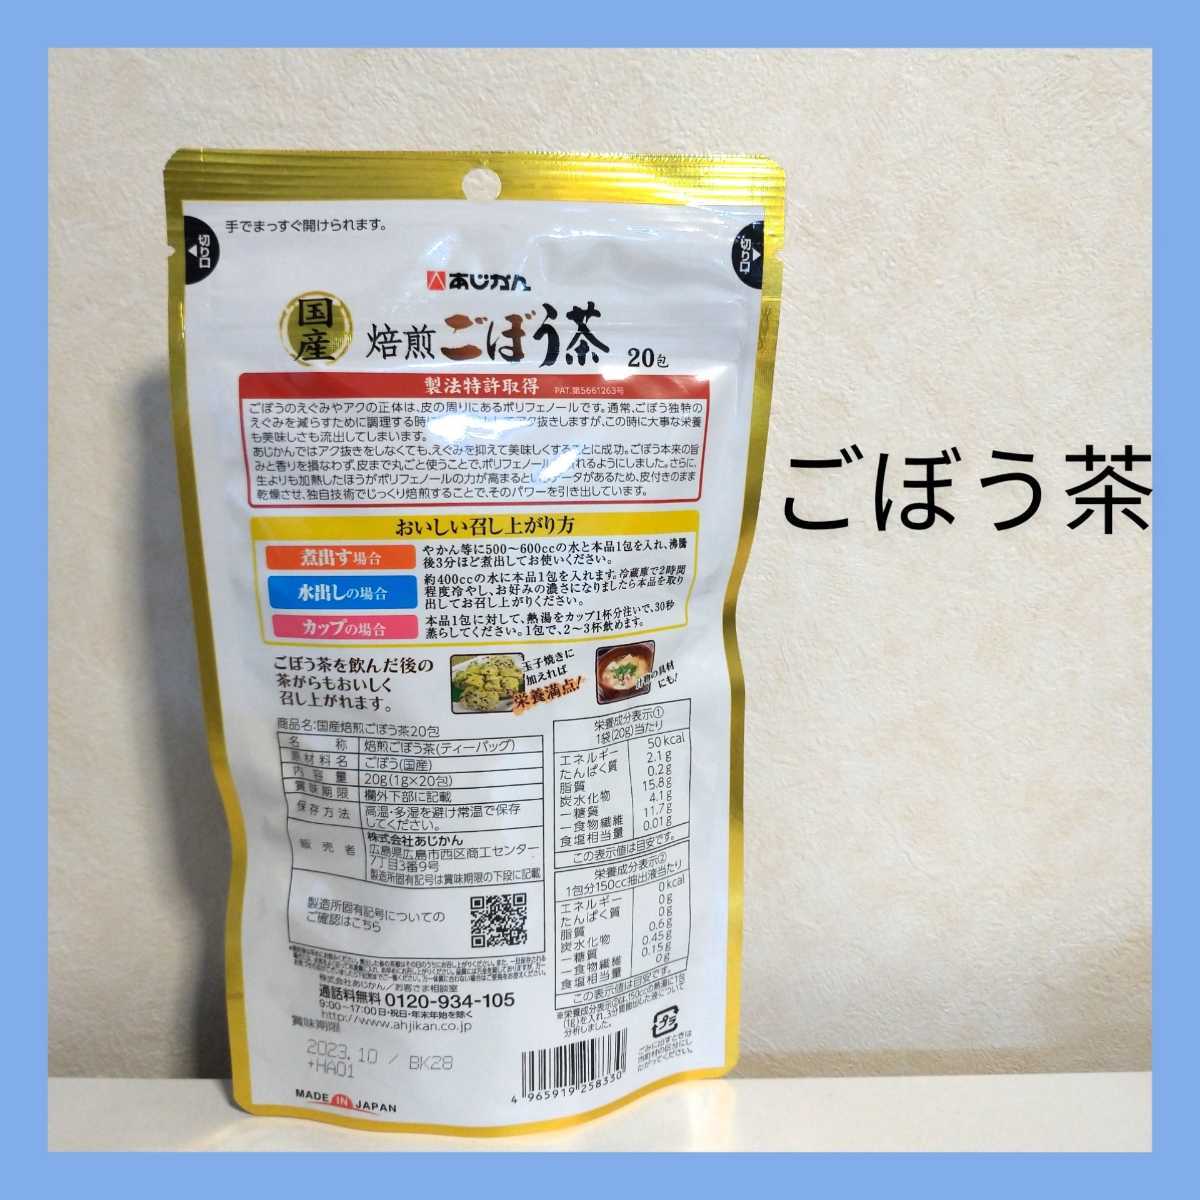 あなたにおすすめの商品 あじかん 国産焙煎ごぼう茶 ティーバッグ 20g 1g 20包